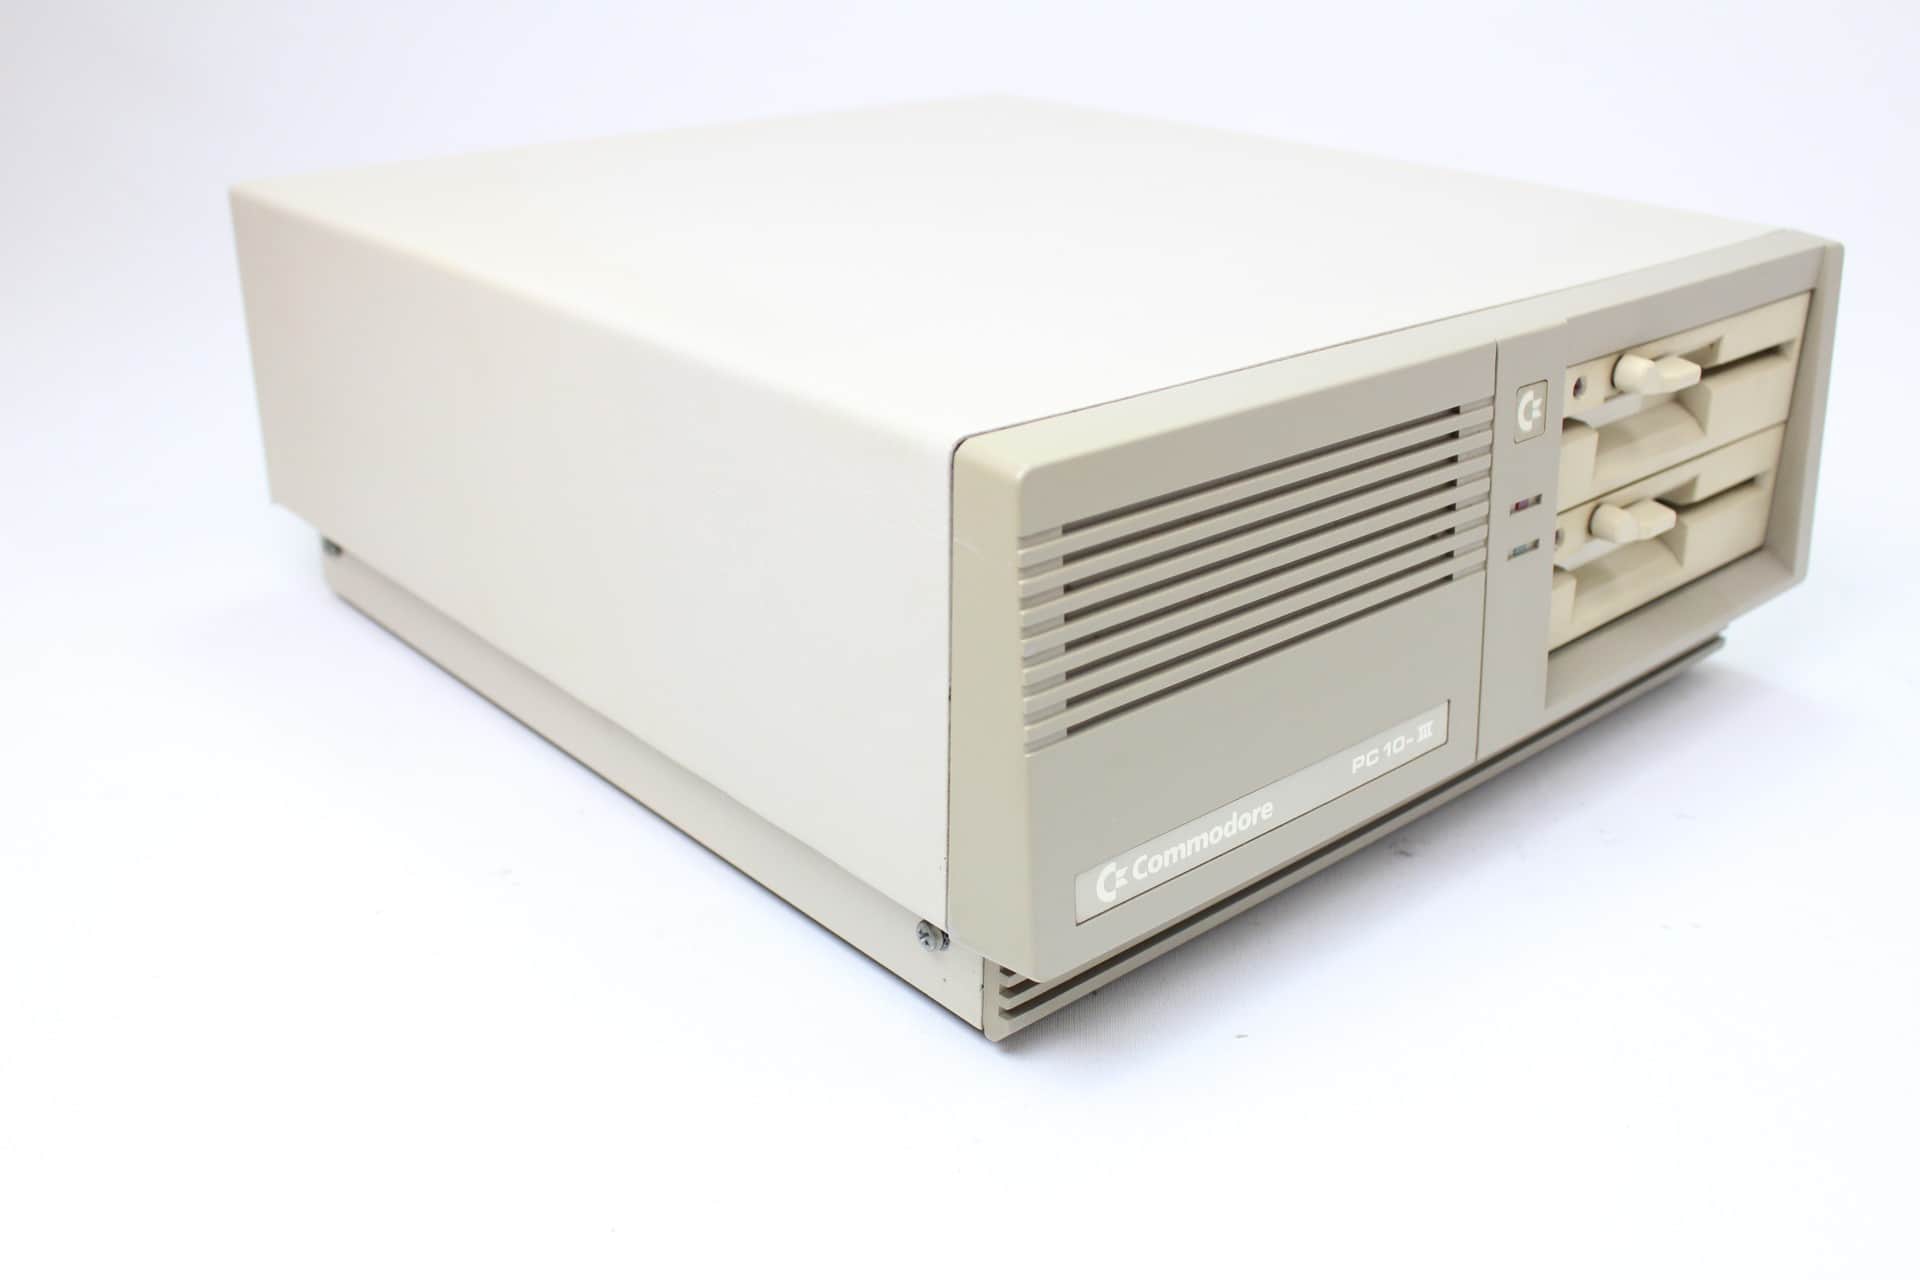 Commodore-PC-10-III